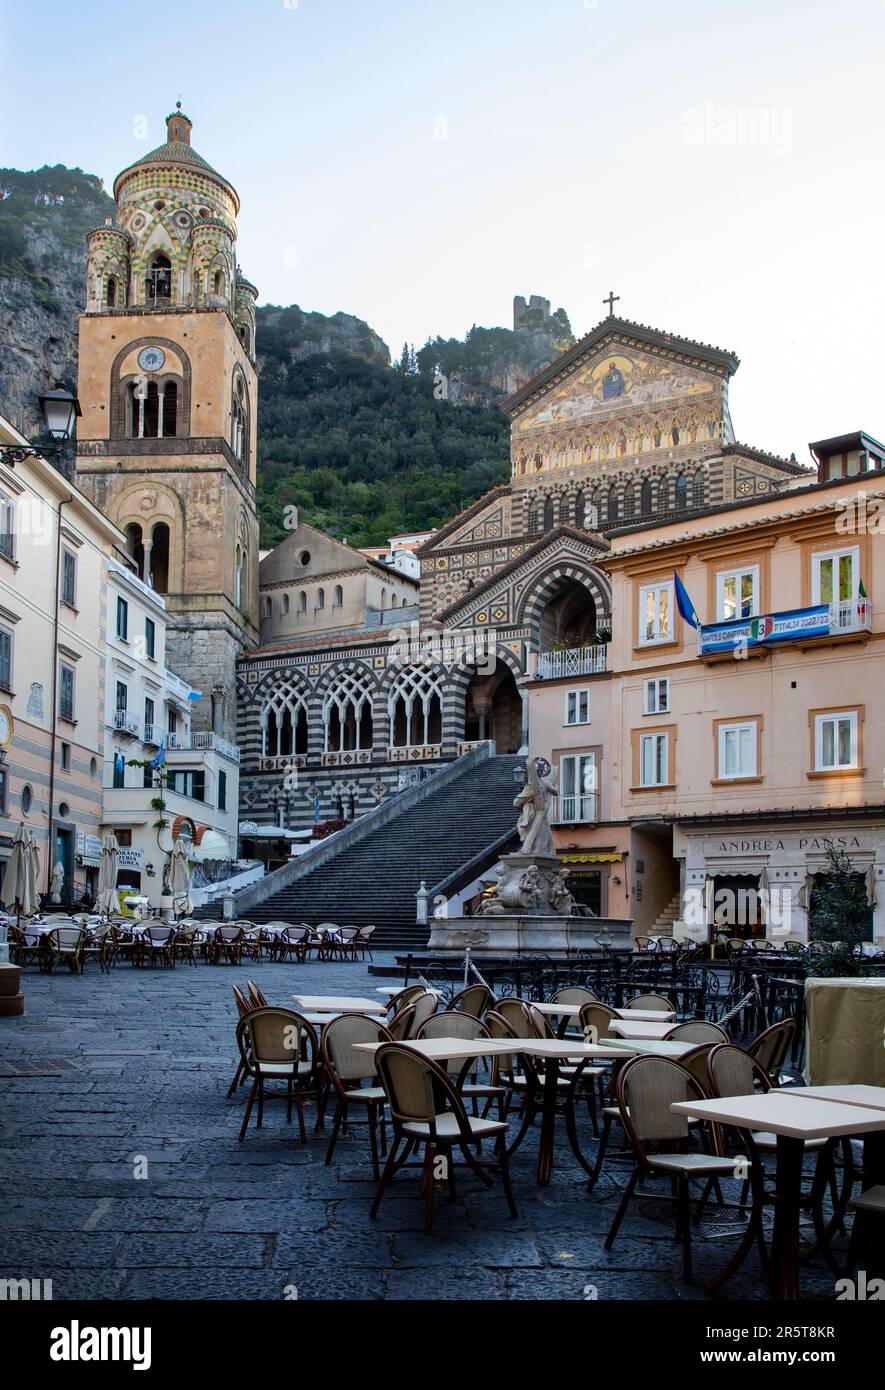 AMALFI CITTÀ, ITALIA - APRILE 28th 2023: Vista sul Duomo di Sant'Andrea e la scalinata che lo conduce da Piazza del Duomo. Amalfi, Italia Foto Stock